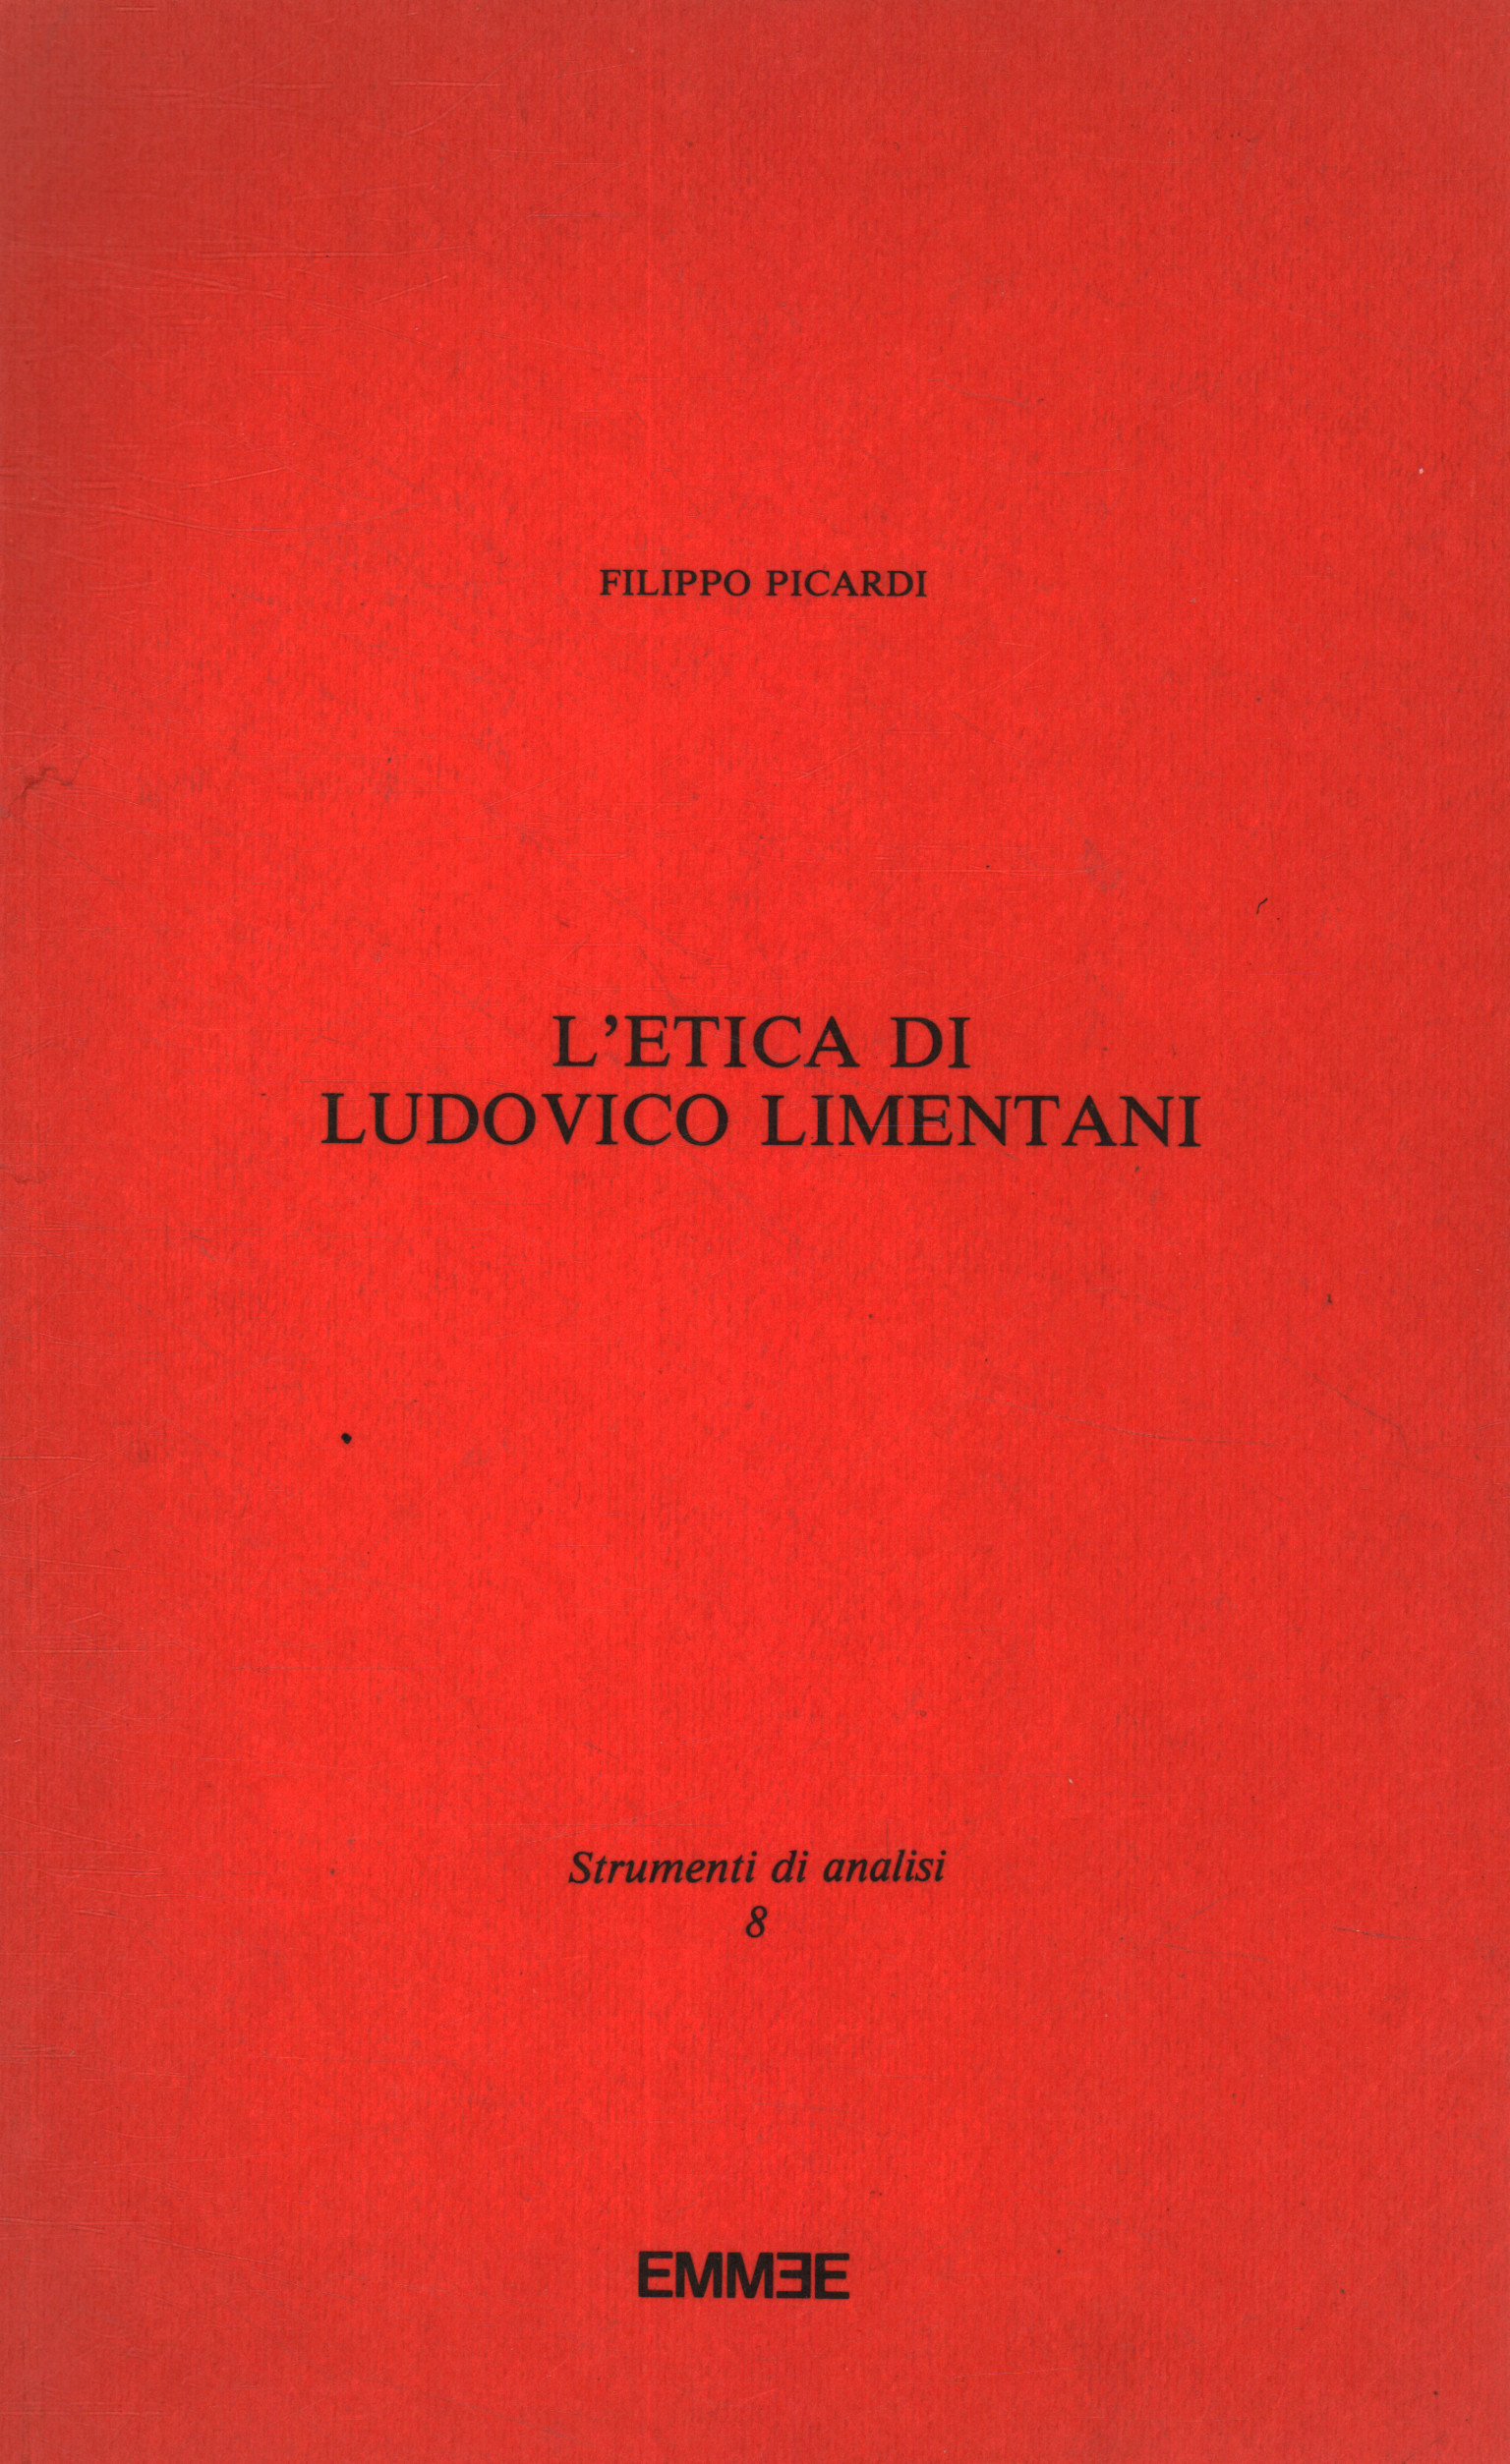 L'etica di Ludovico Limentani